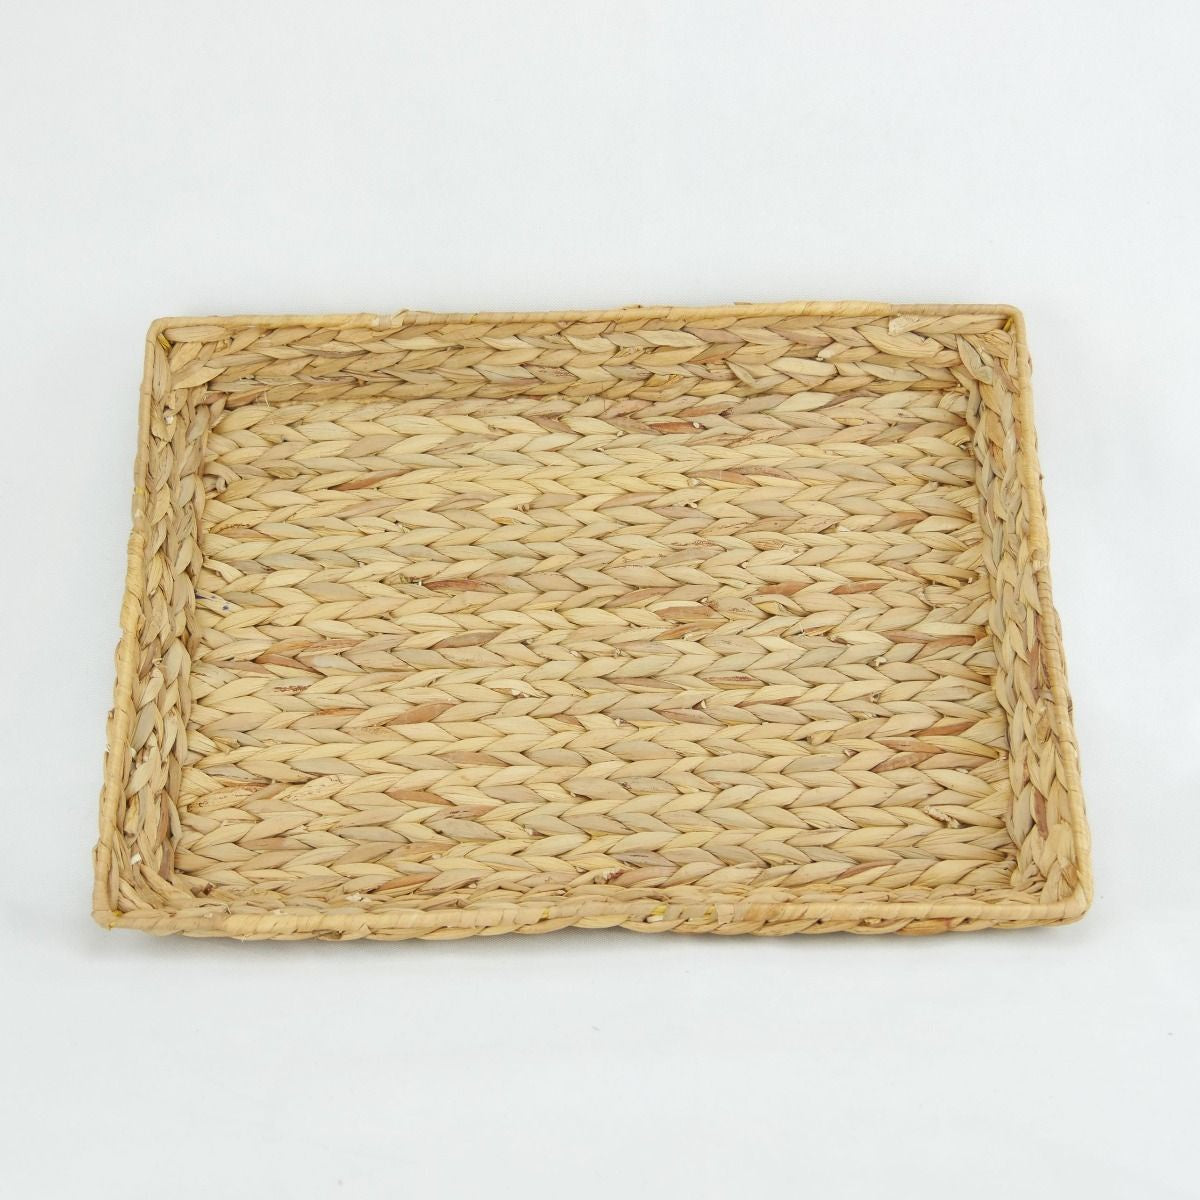 Baskets - Water Hyacinth Tray - Small